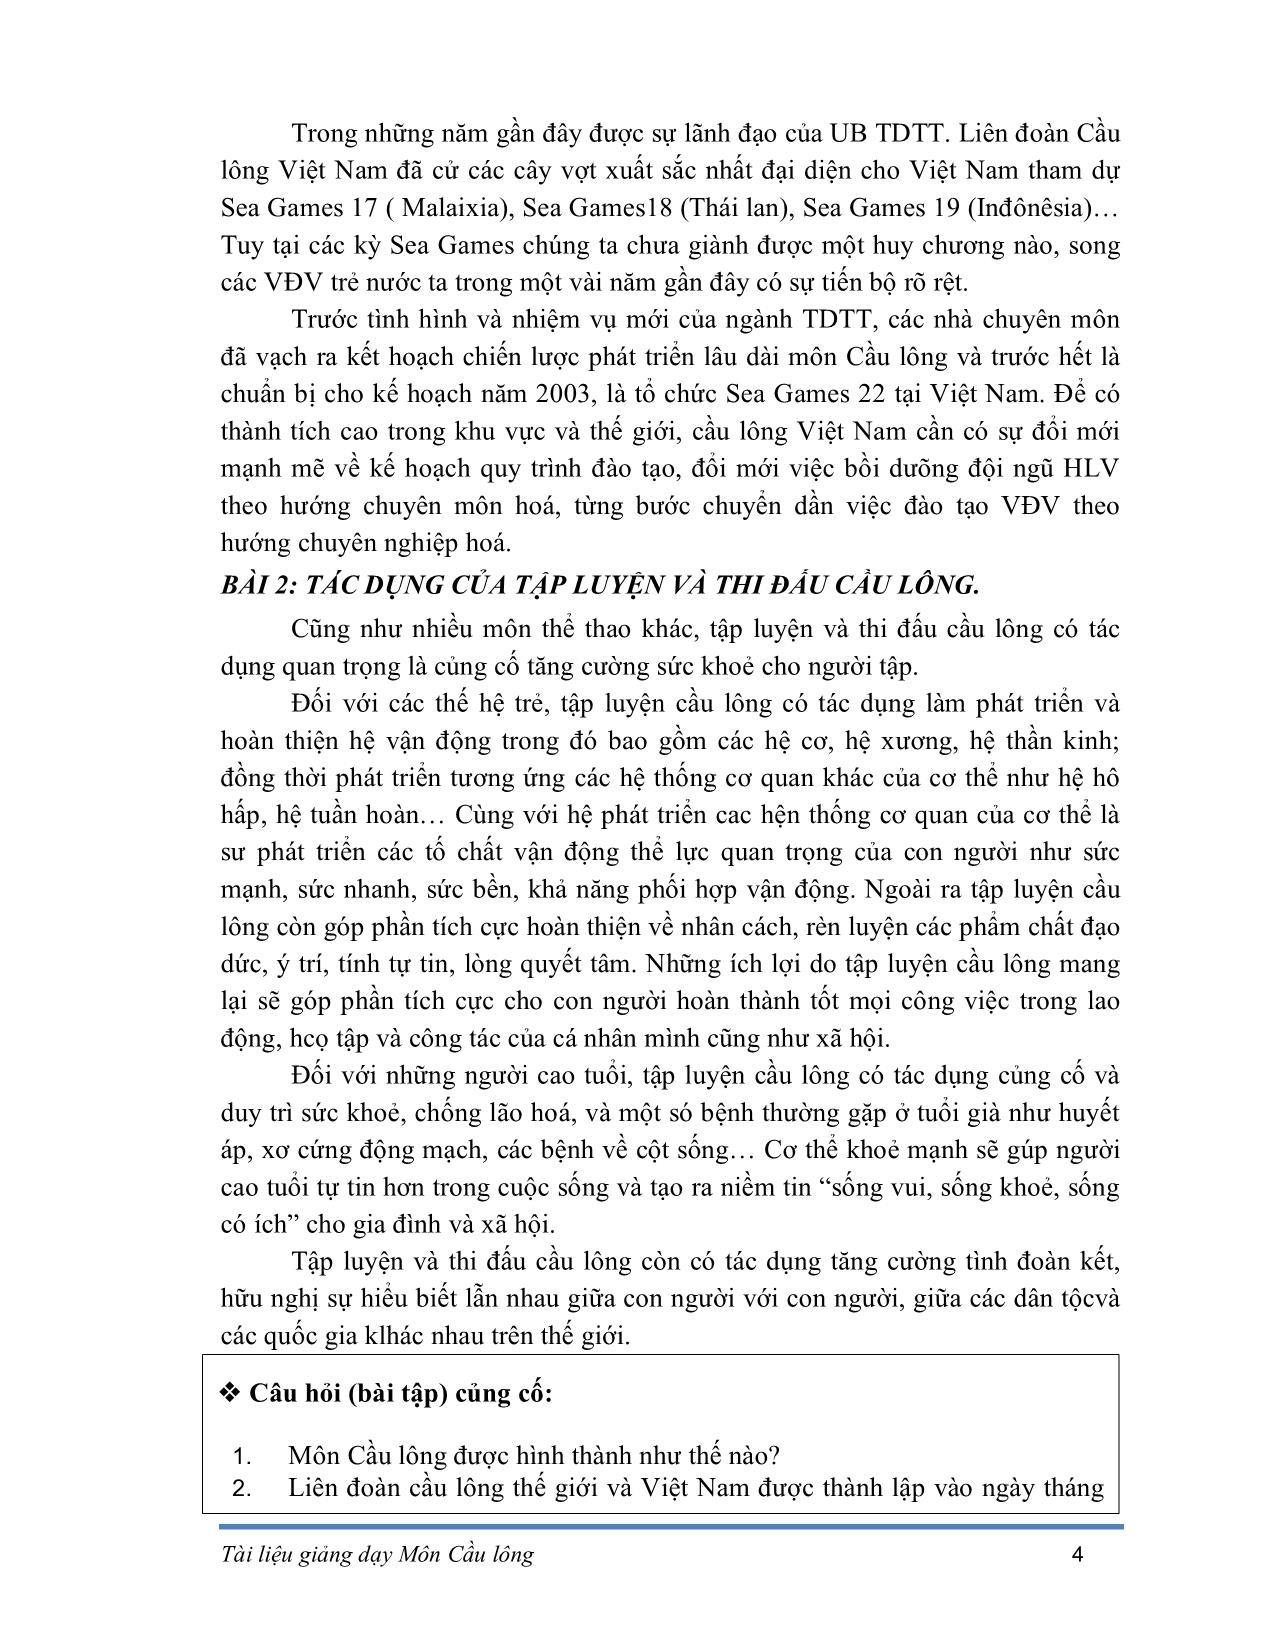 Giáo trình Cầu lông trang 7